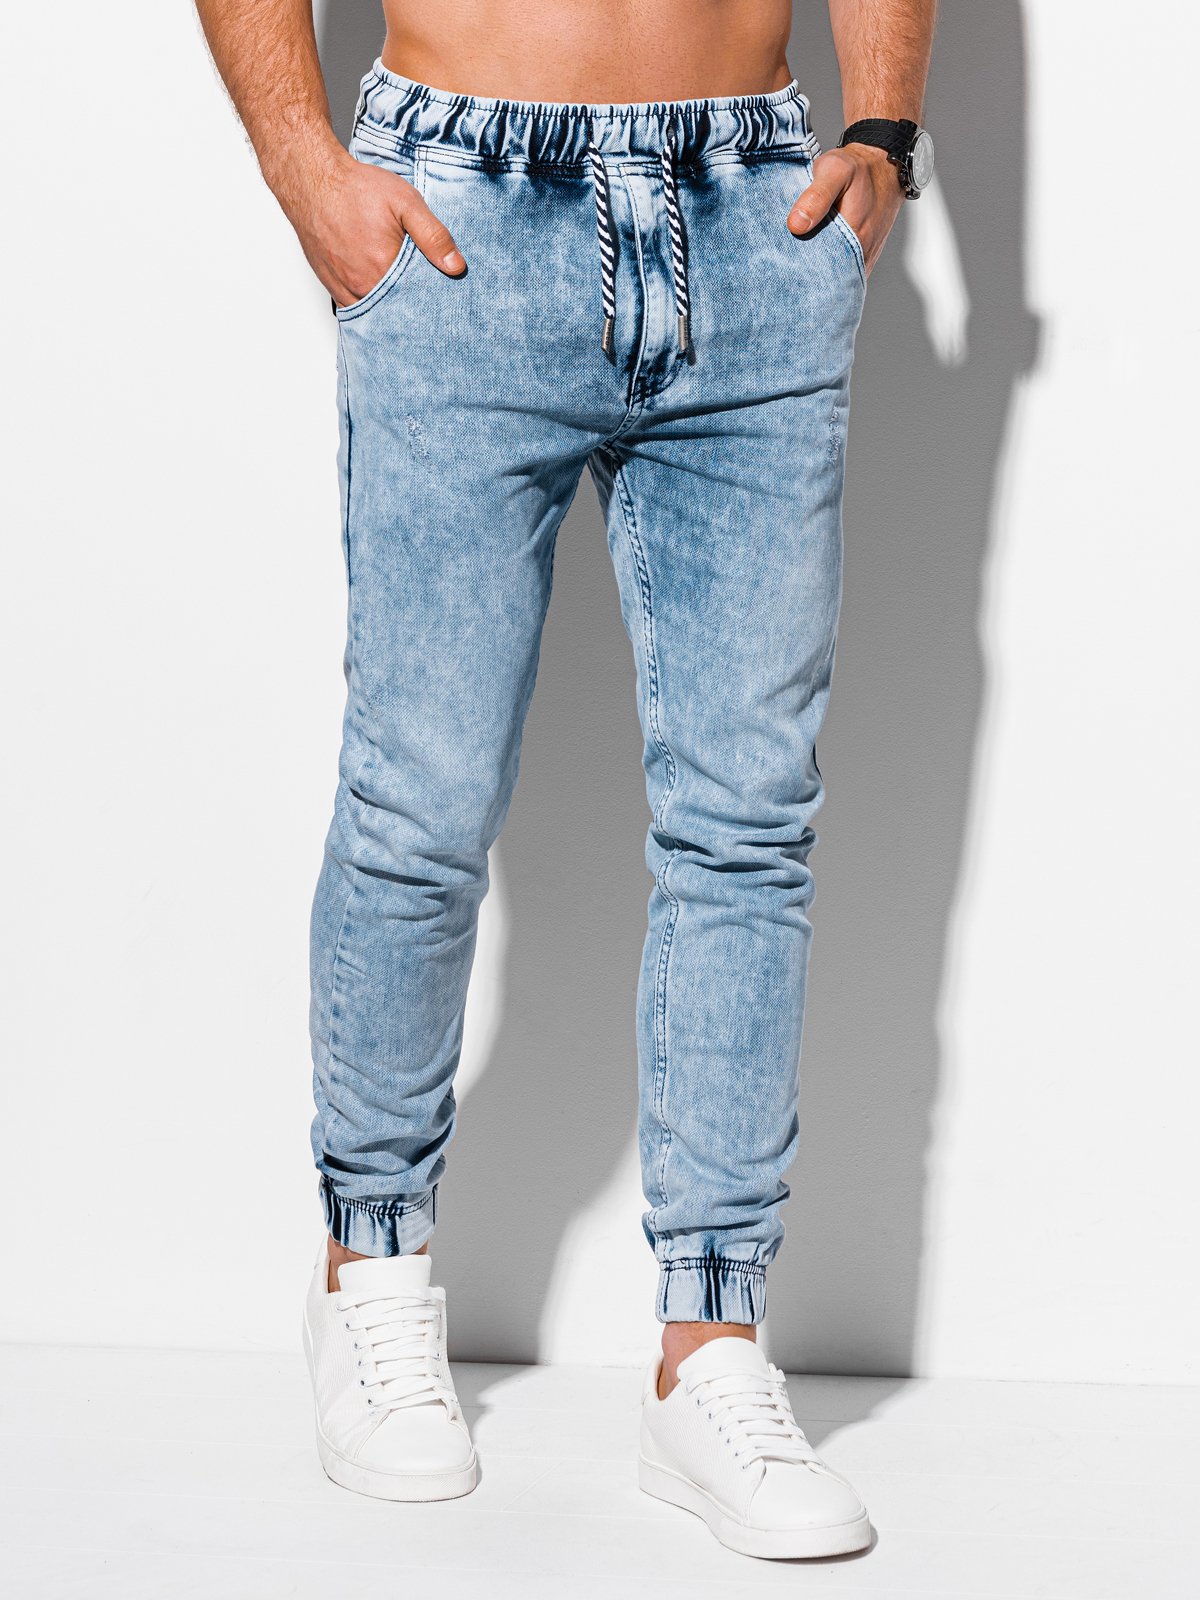 Men's jeans joggers P868 - light blue | MODONE wholesale - Clothing For Men